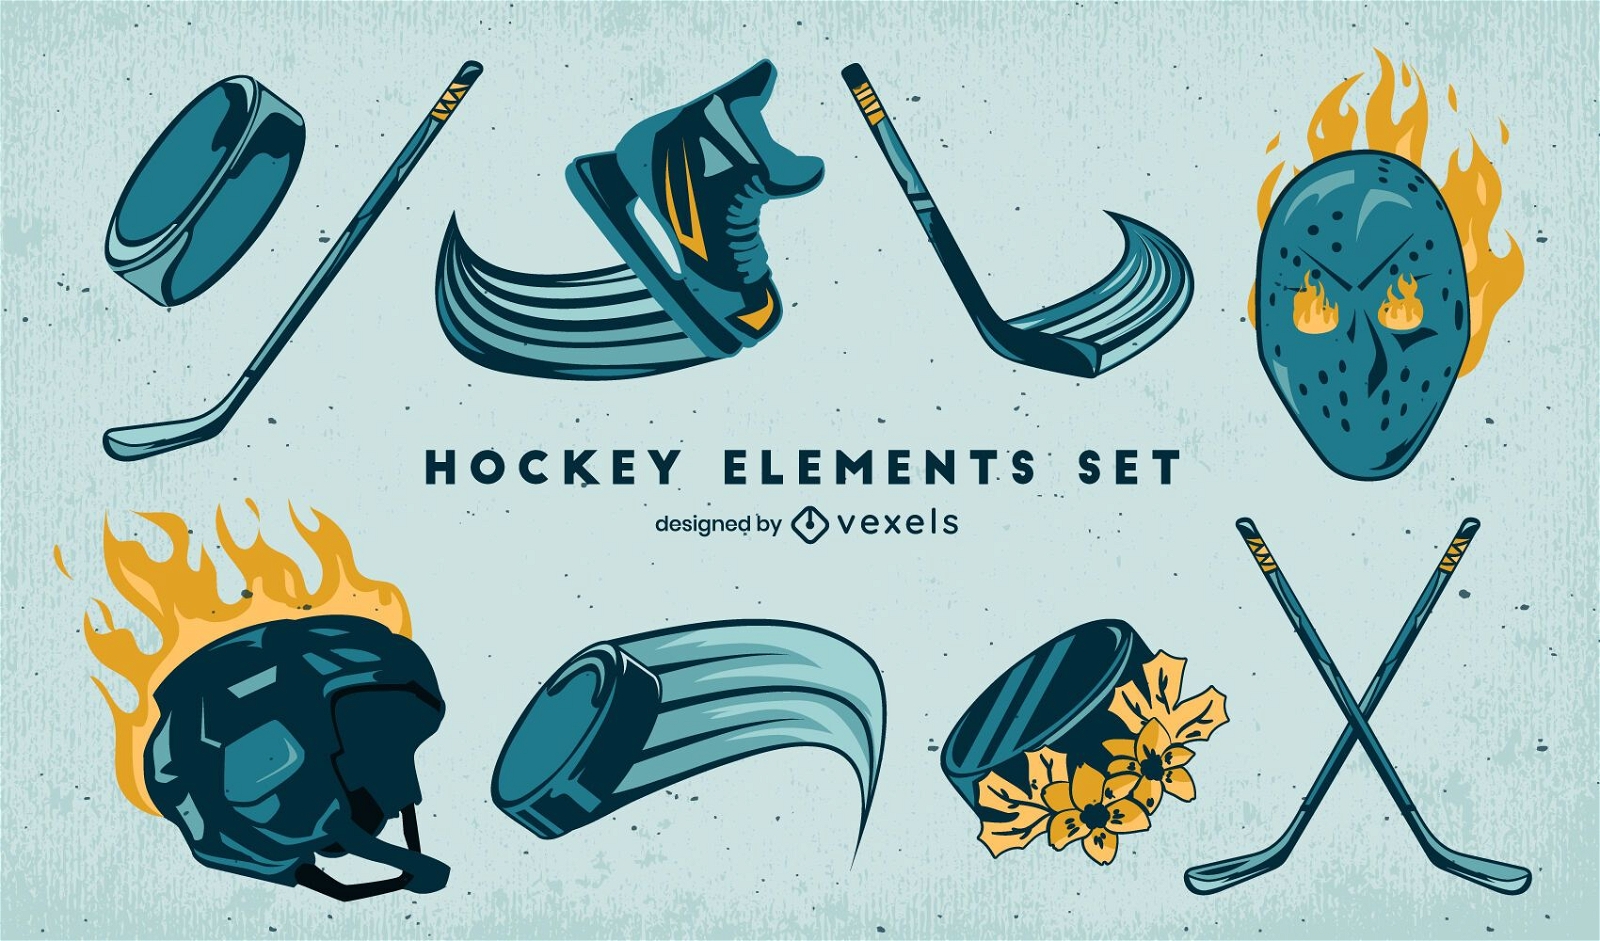 Equipo de fuego deportivo de hockey sobre hielo.